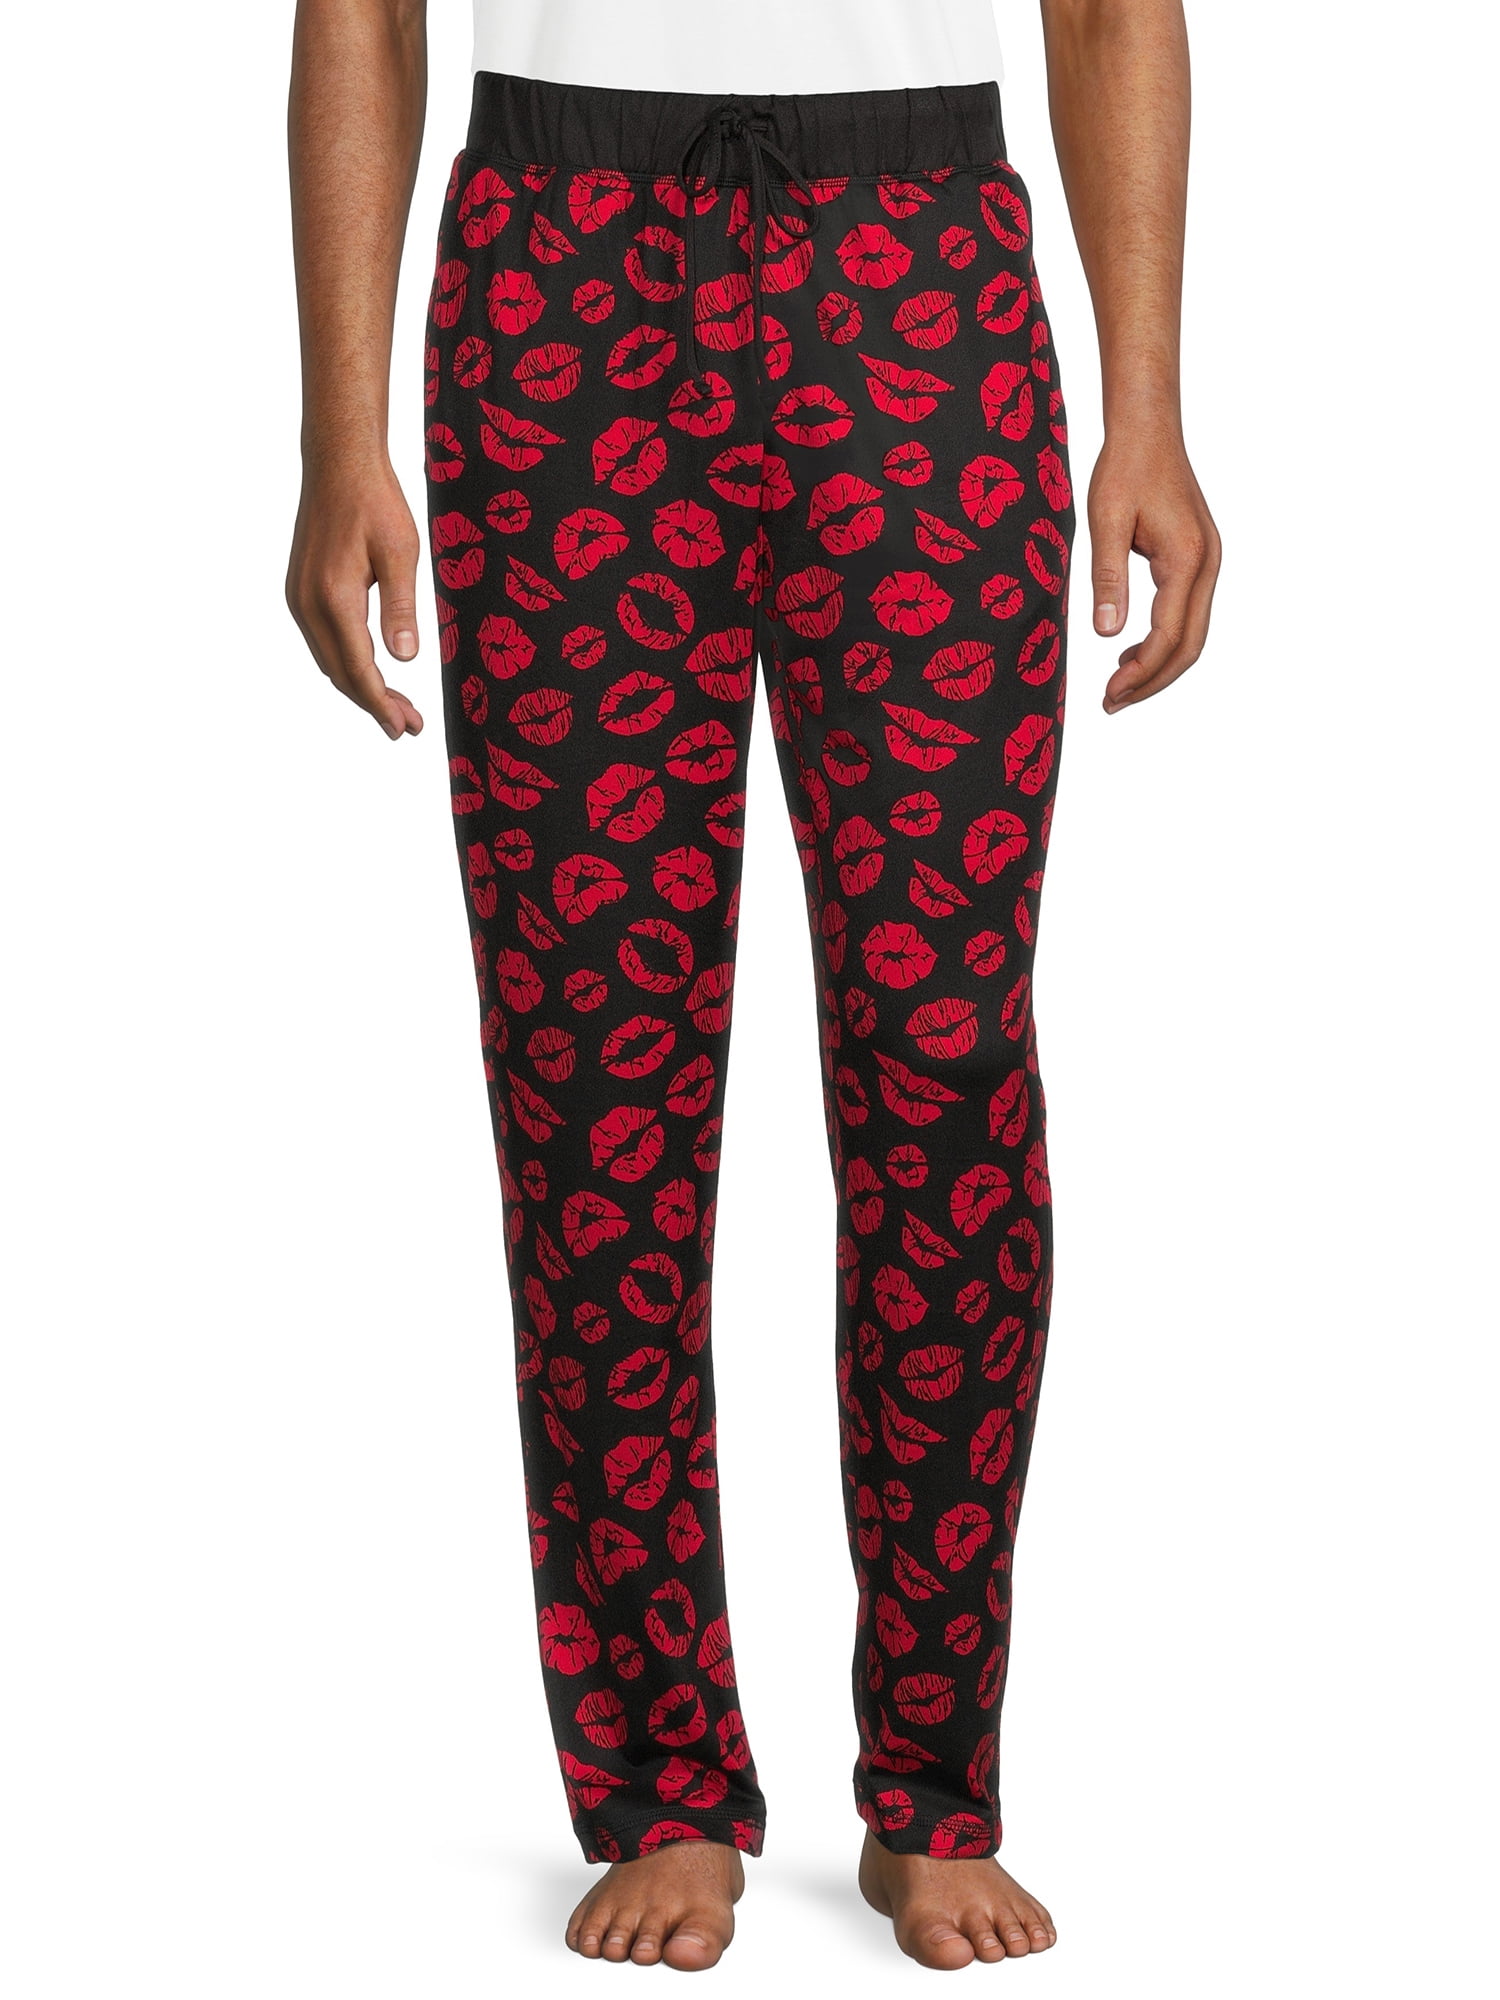 Basketball Pajama Pants - Made with Love and Kisses